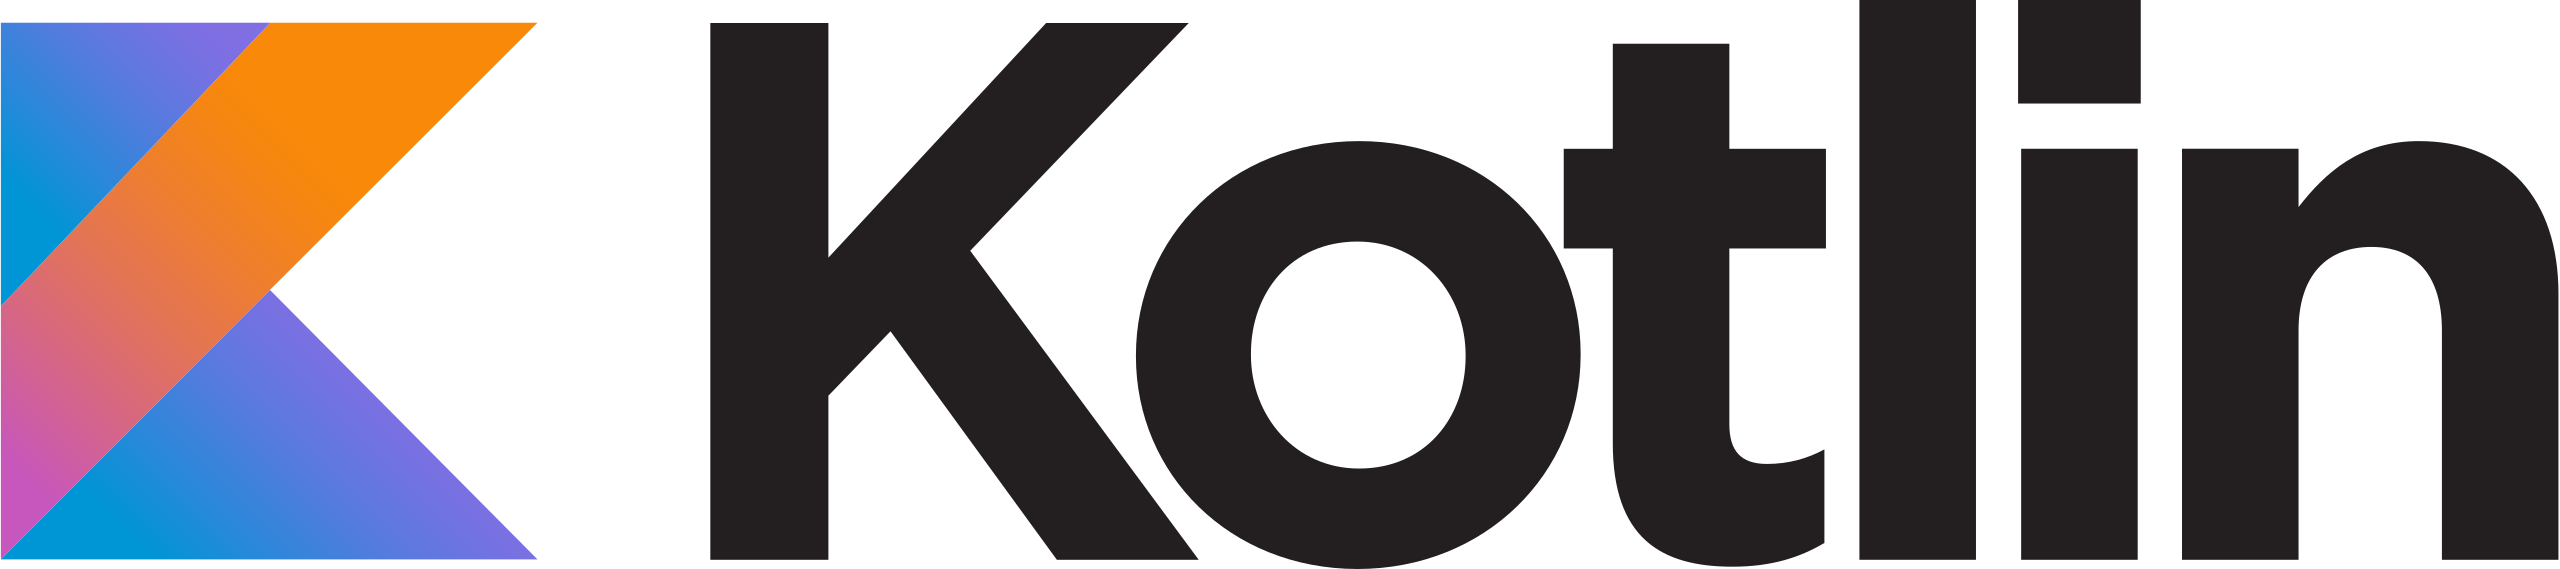 Kotlin_logo